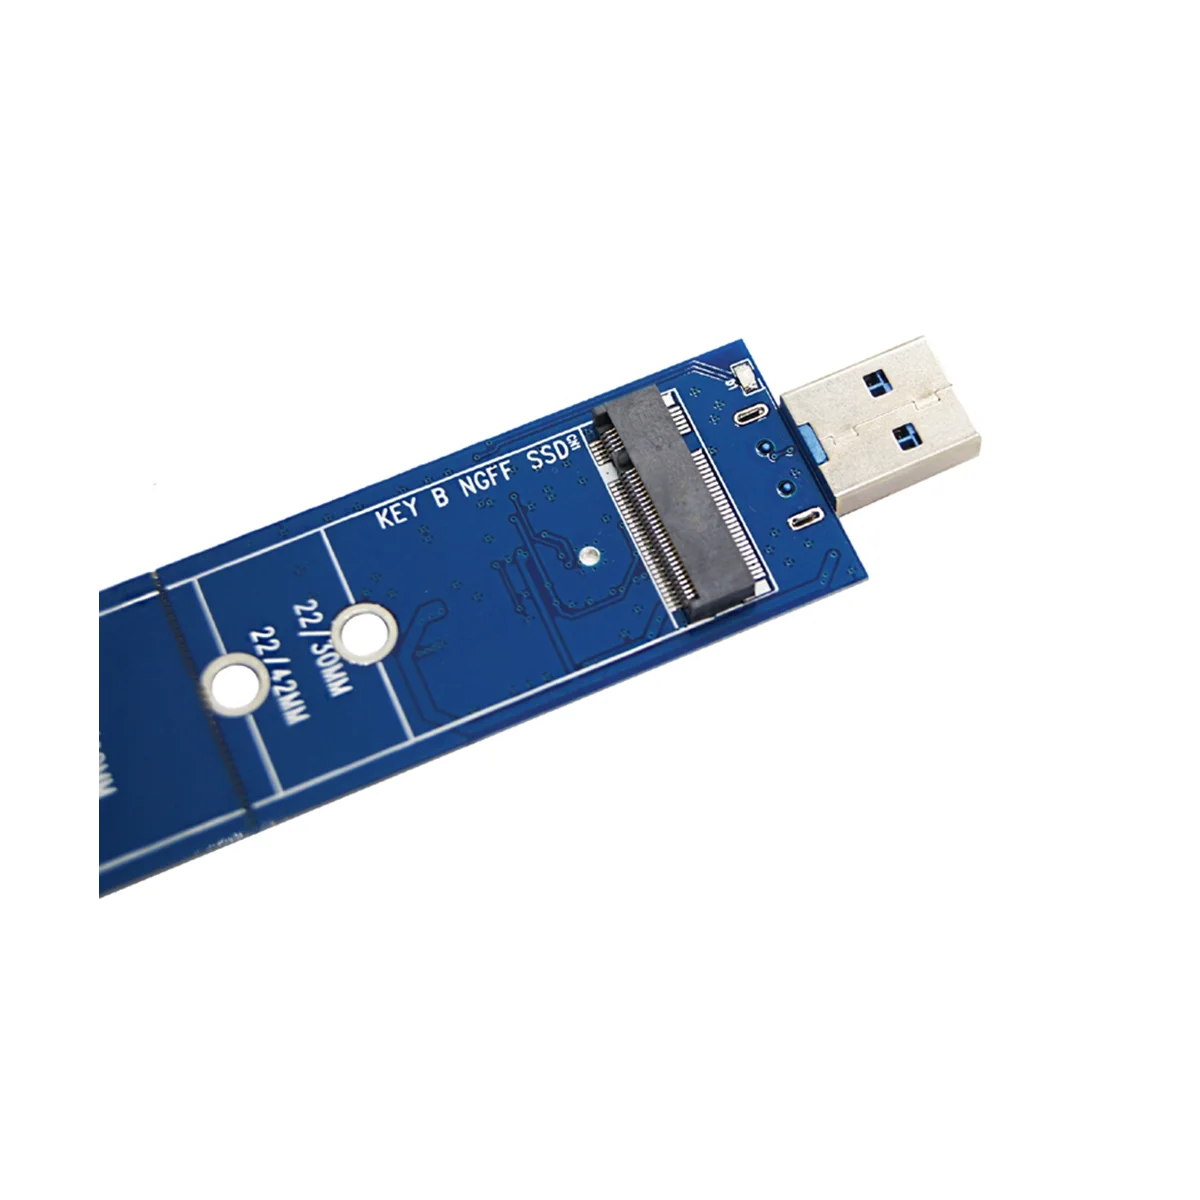 SSD M2 la USB Adaptor M. 2 până la USB Adaptor Cheie B M. 2 SATA Protocol SSD Adaptor de unitati solid state pentru USB 3.0 SSD Card5